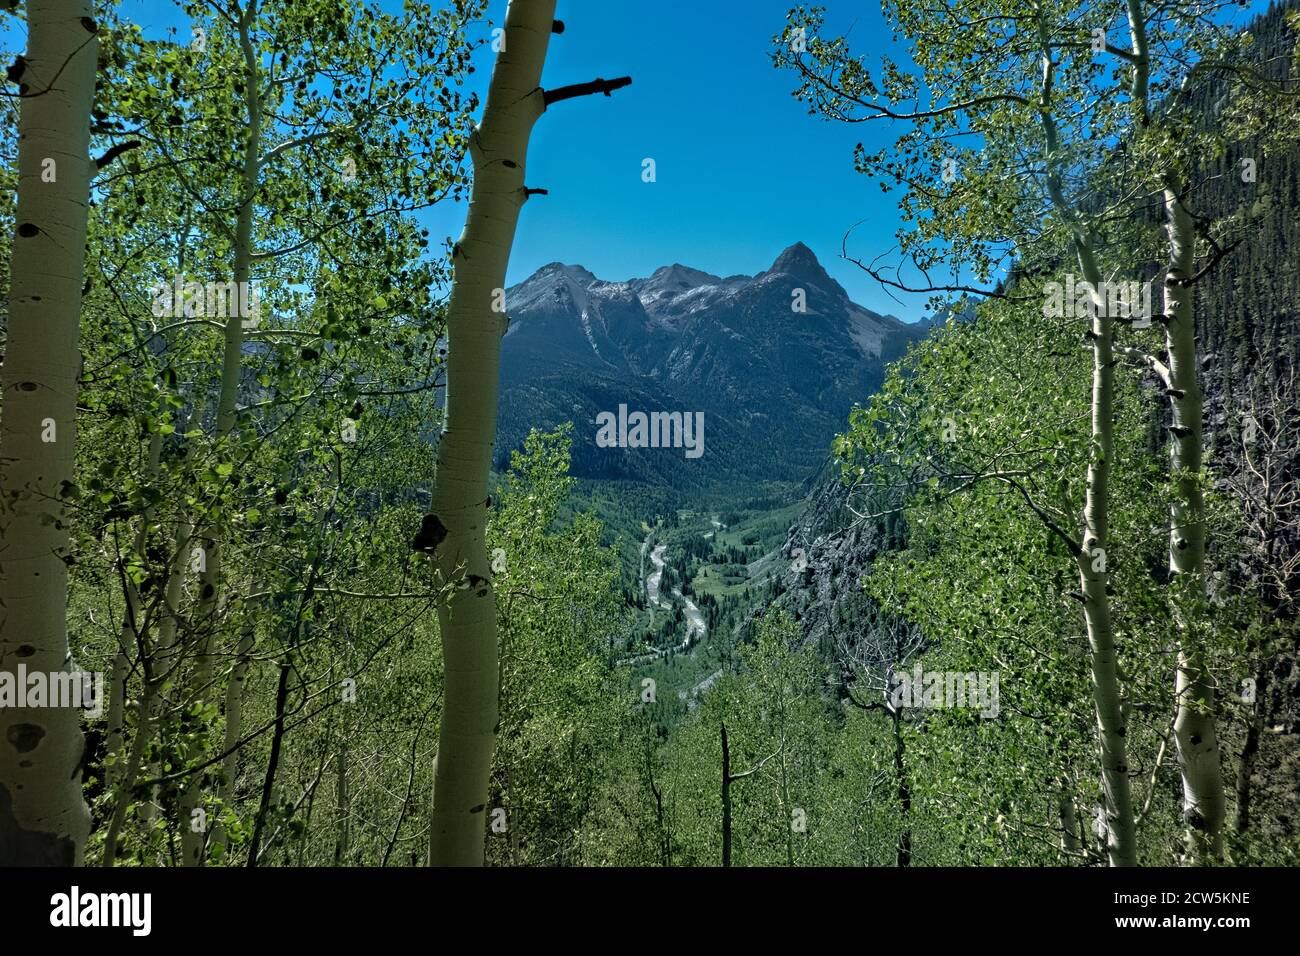 Mount Garfield and the Animas River Valley, San Juan Mountains, Colorado Stock Photo